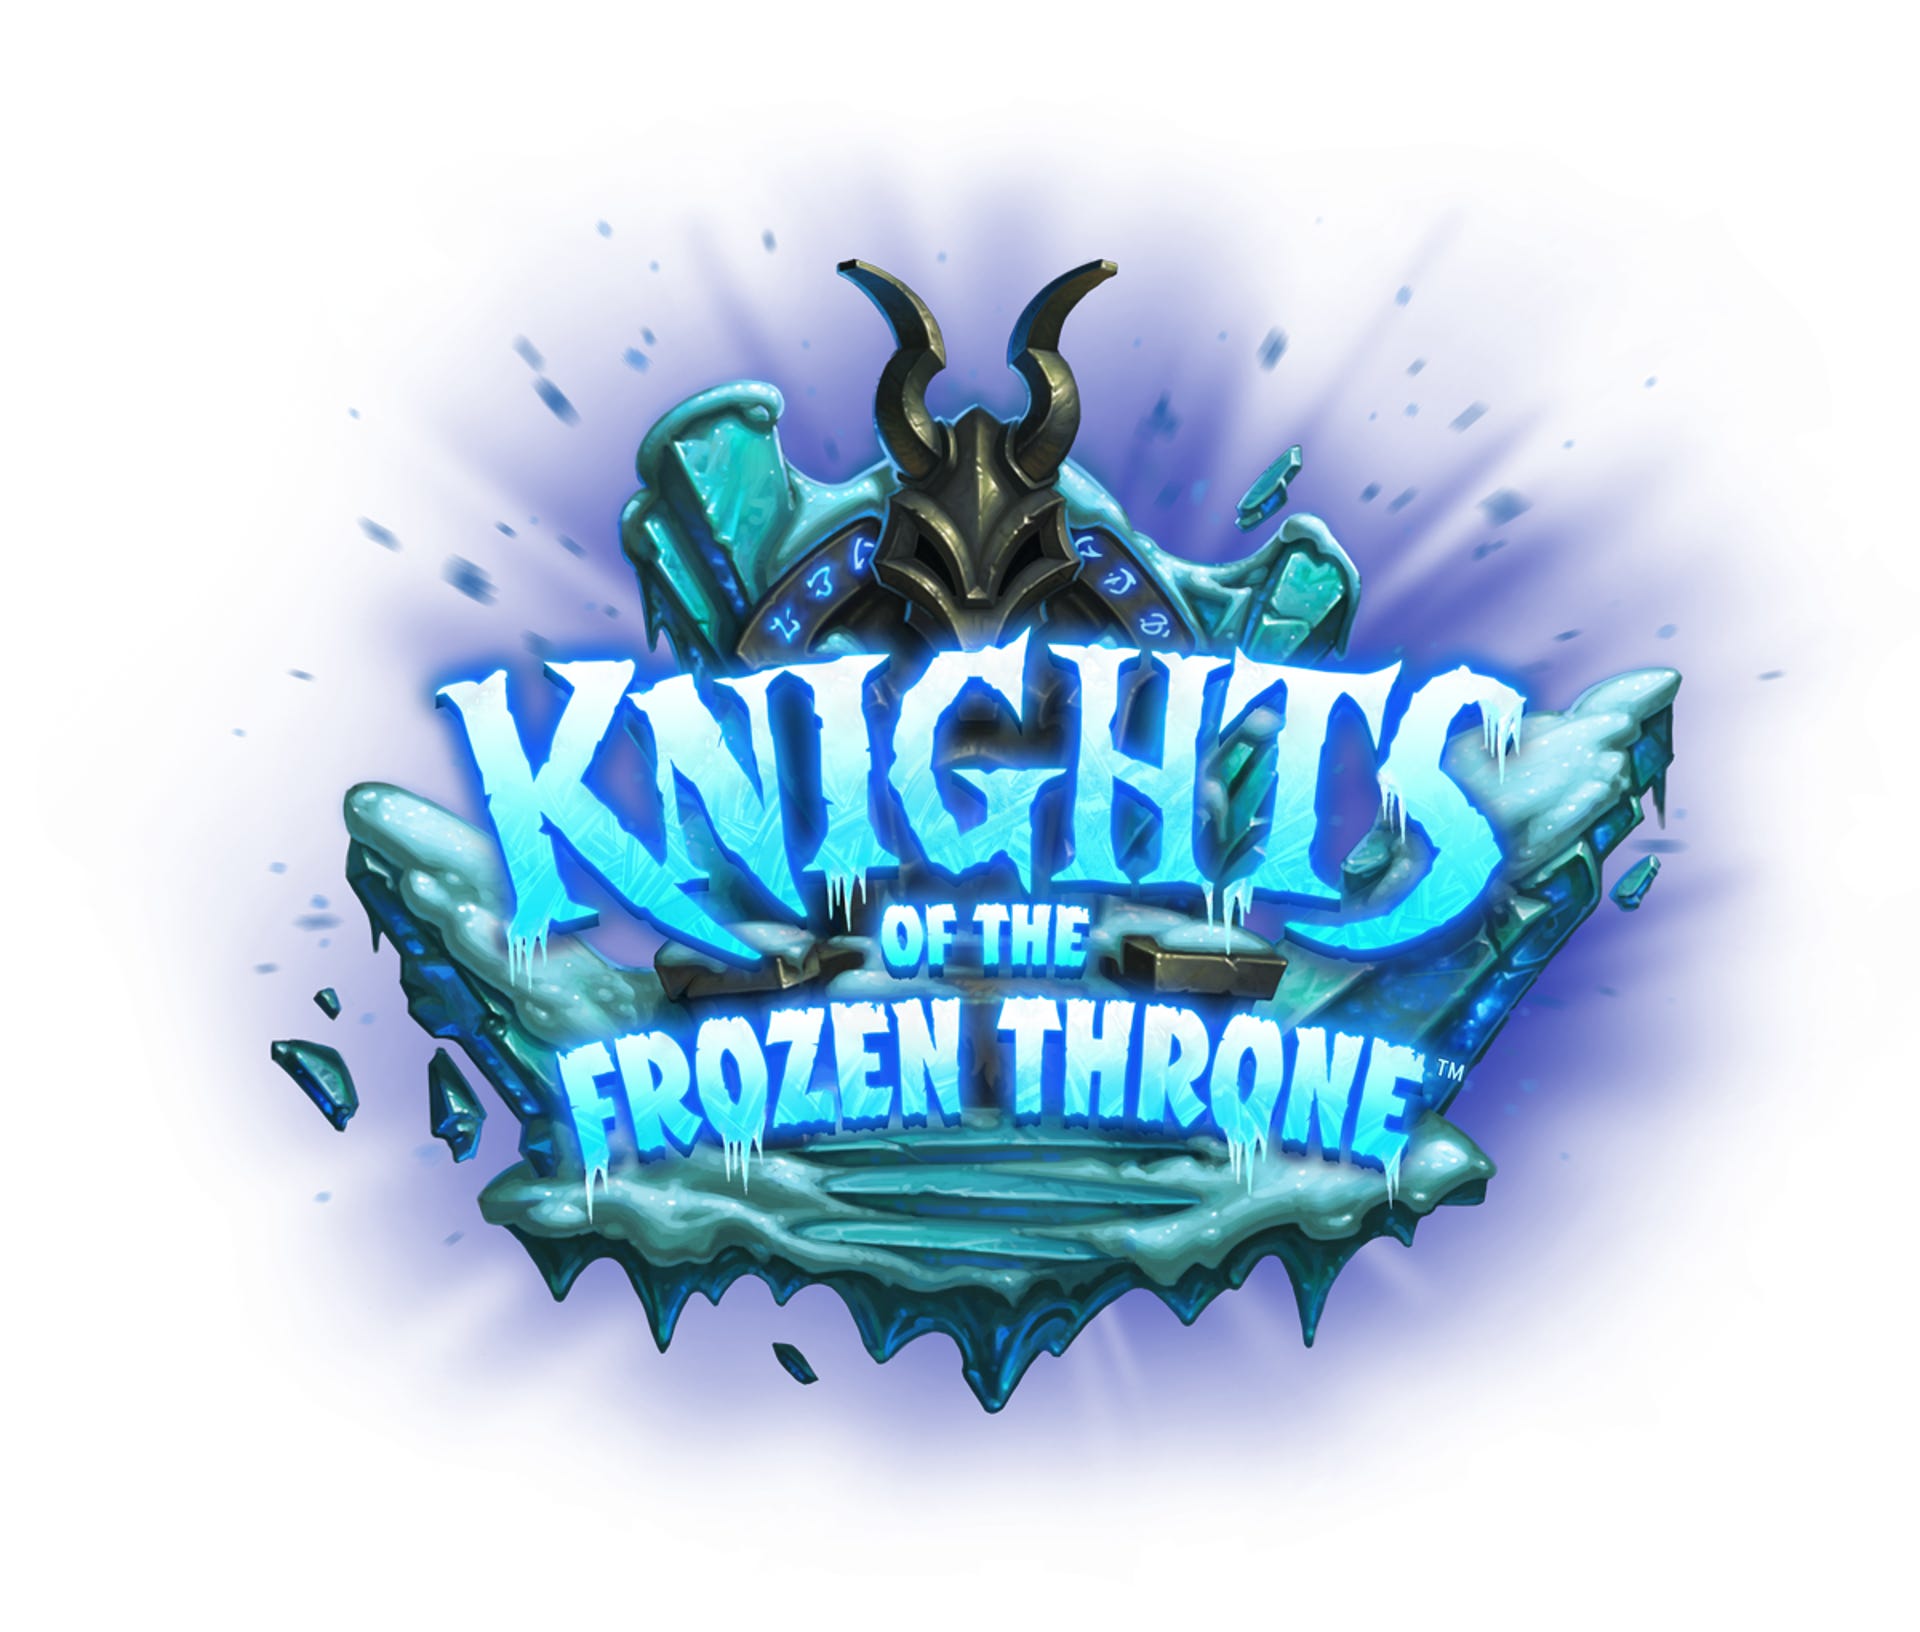 knights-of-the-frozen-throne-logo-enus